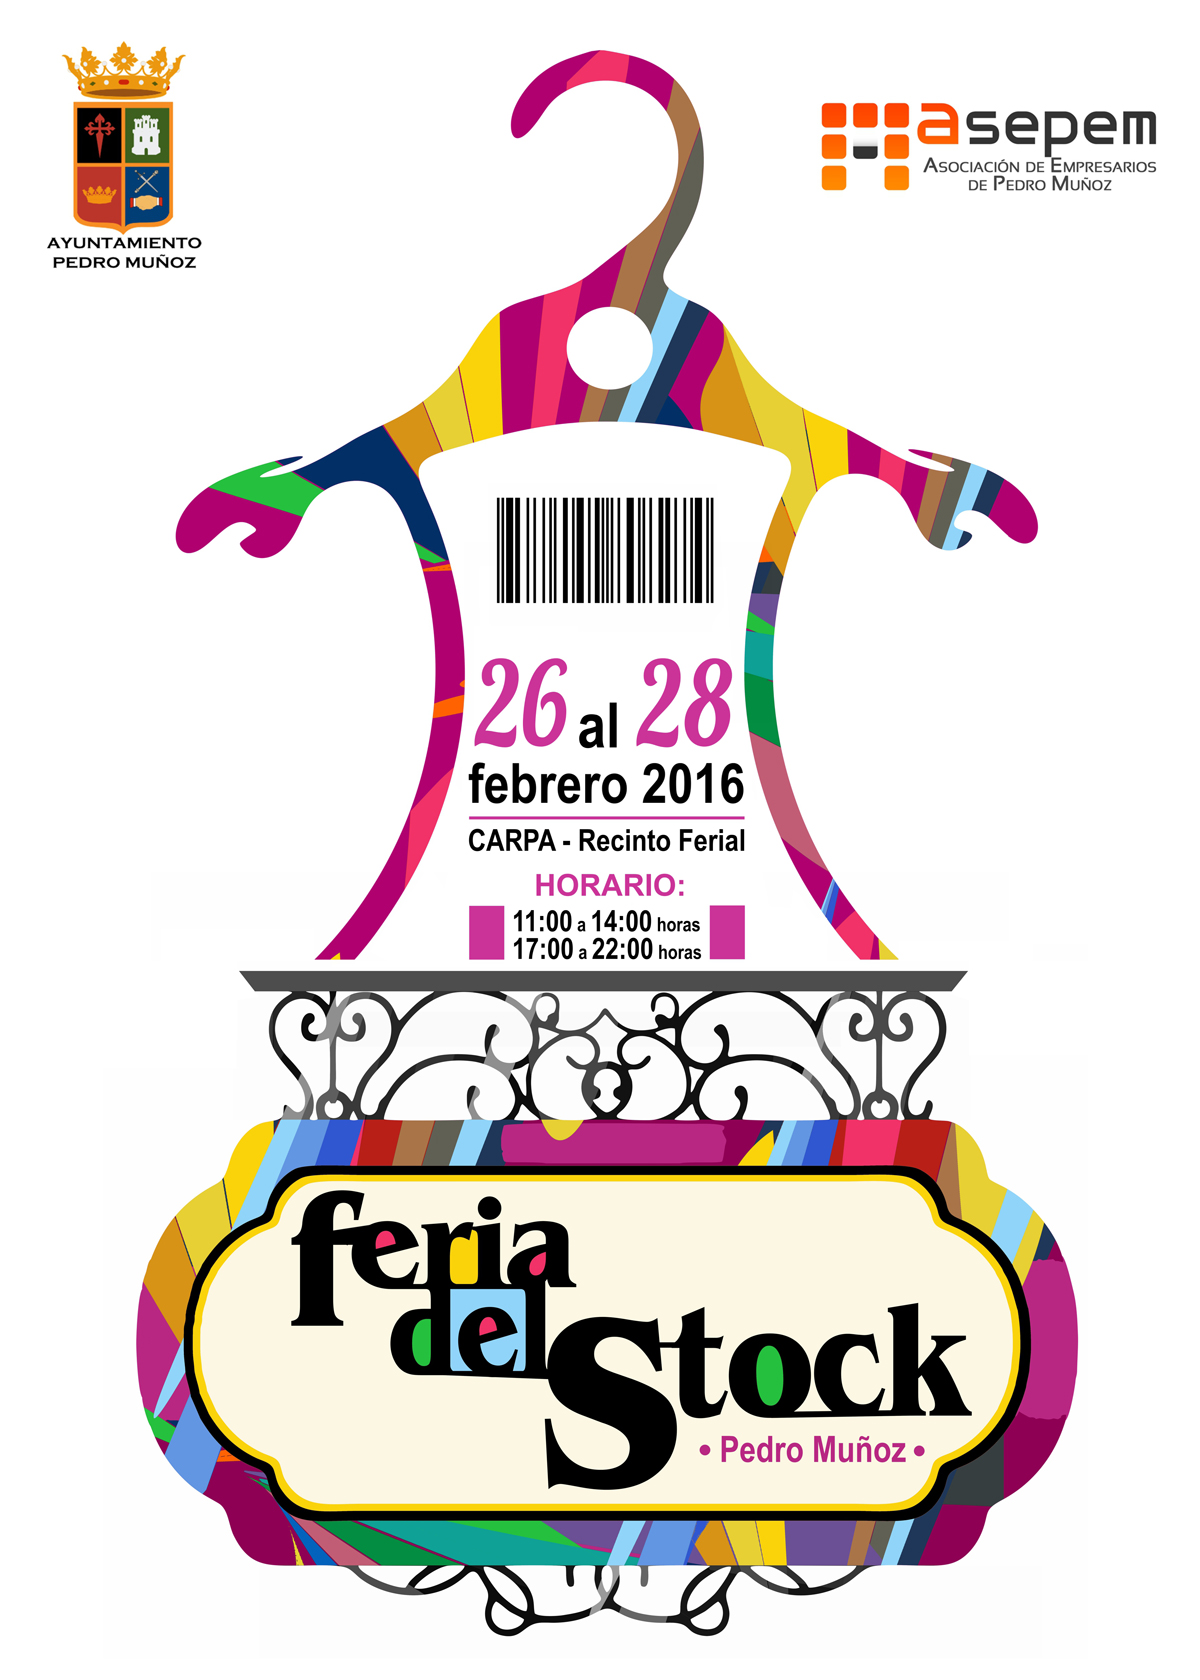 El Ayuntamiento y ASEPEM ya tienen lista la Feria del Stock 2016